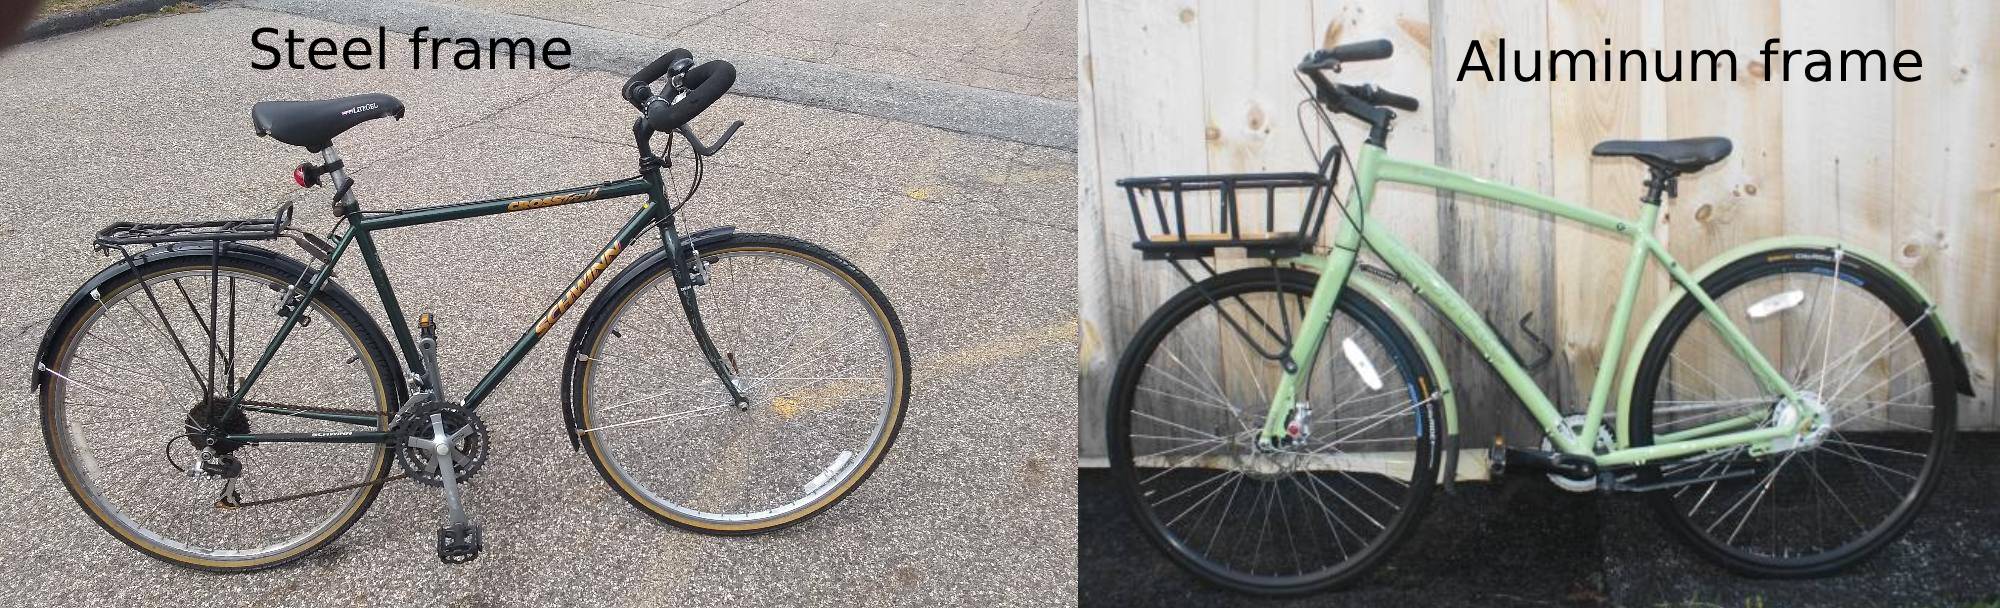 A steel bike vs. aluminum